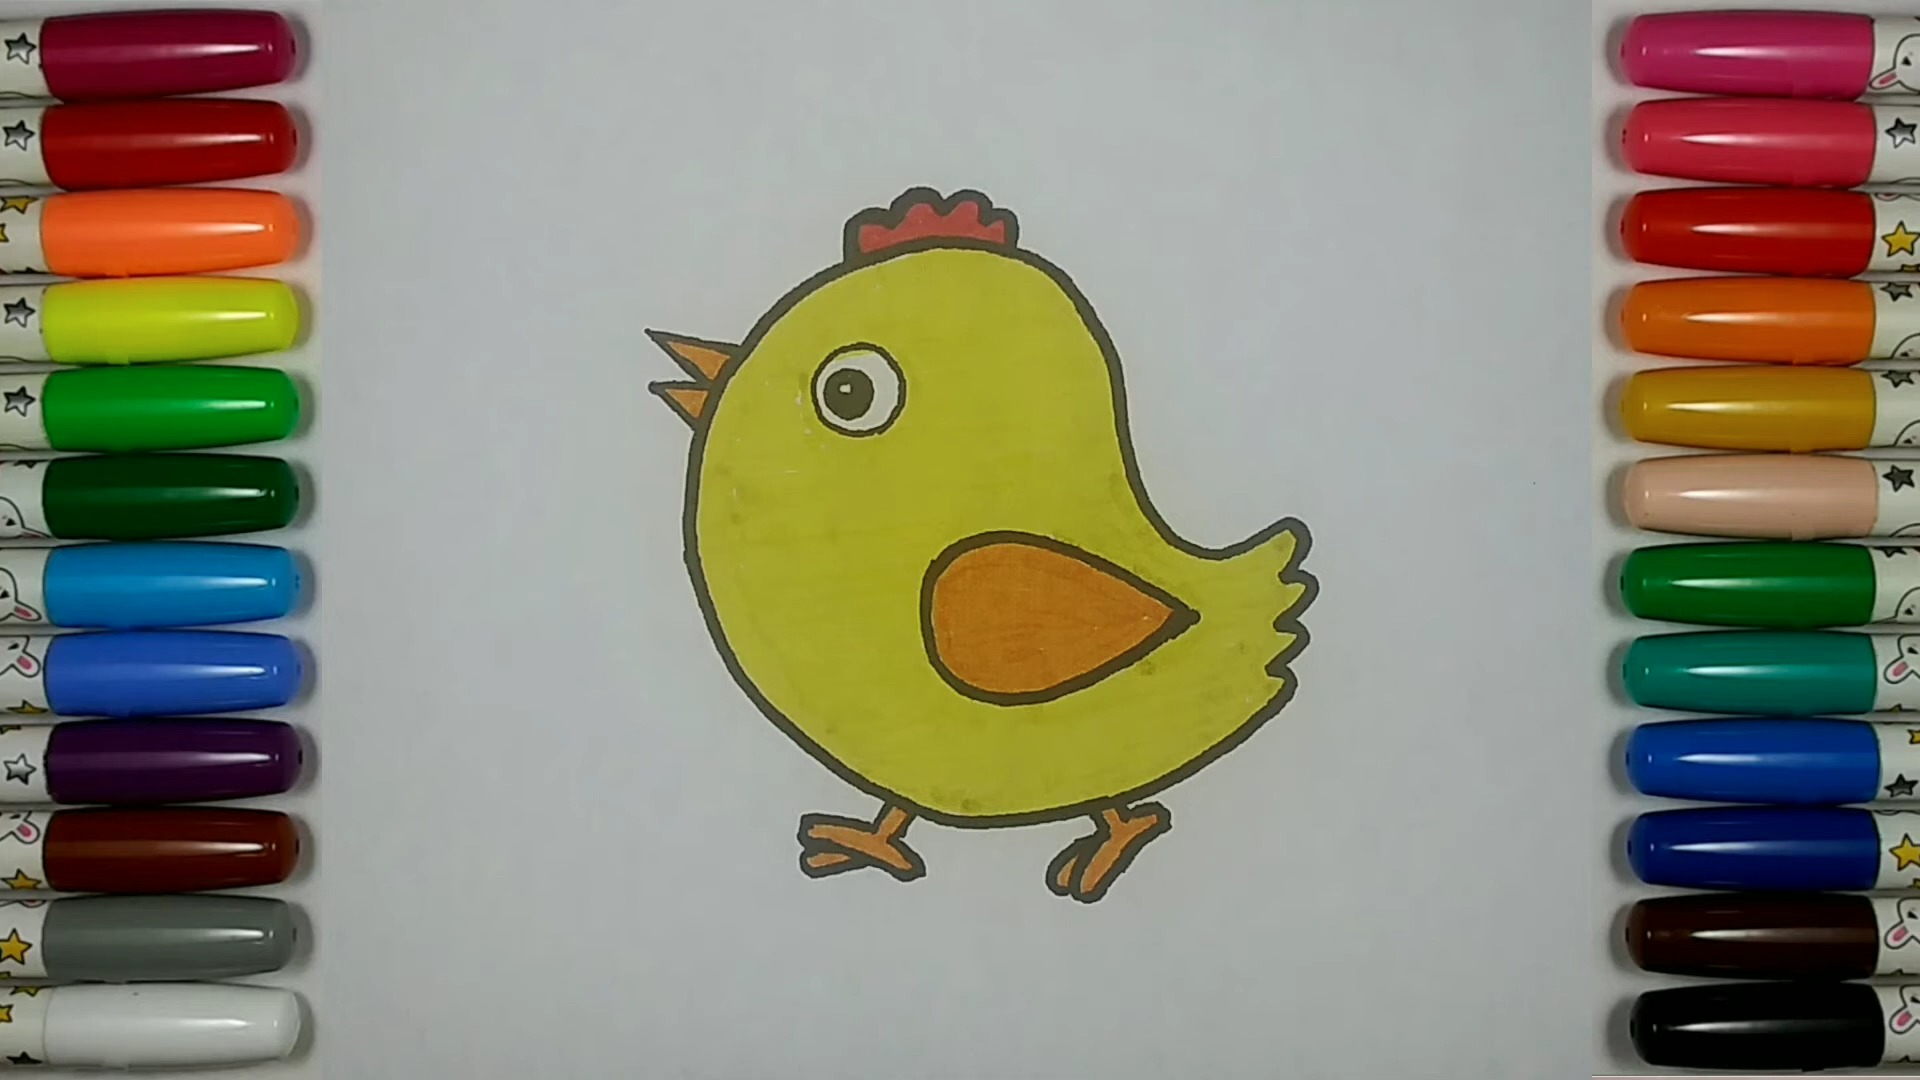 【儿童简笔画教程】画一只可爱的小公鸡:农场的活力!